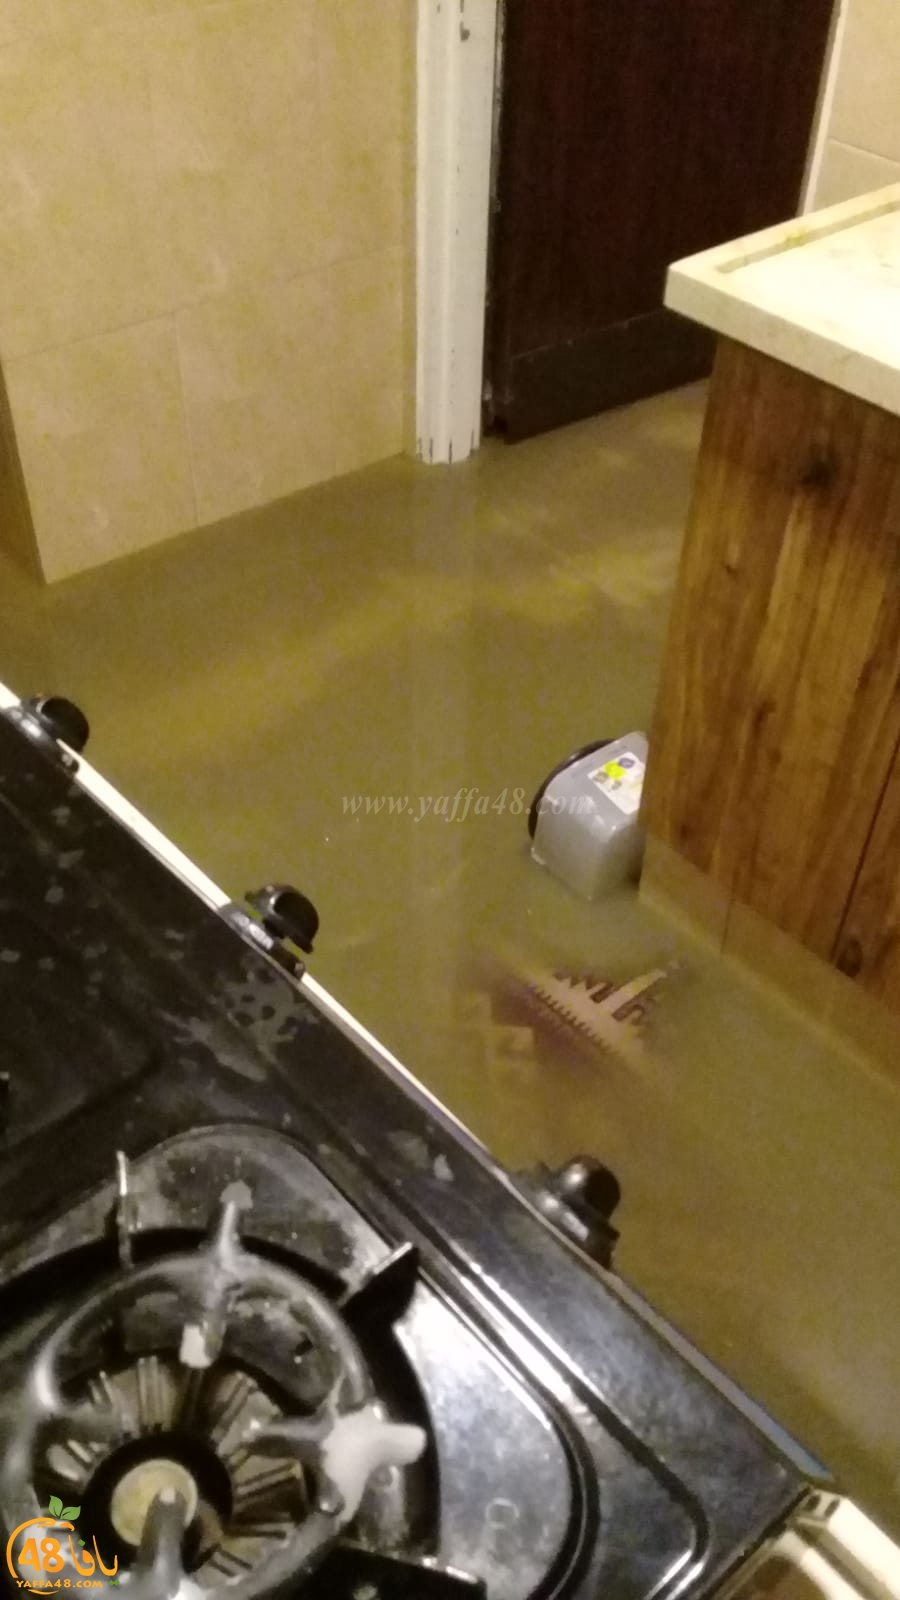 صور: مياه الصرف الصحّي تغمر بيت أحد المواطنين في الرملة 